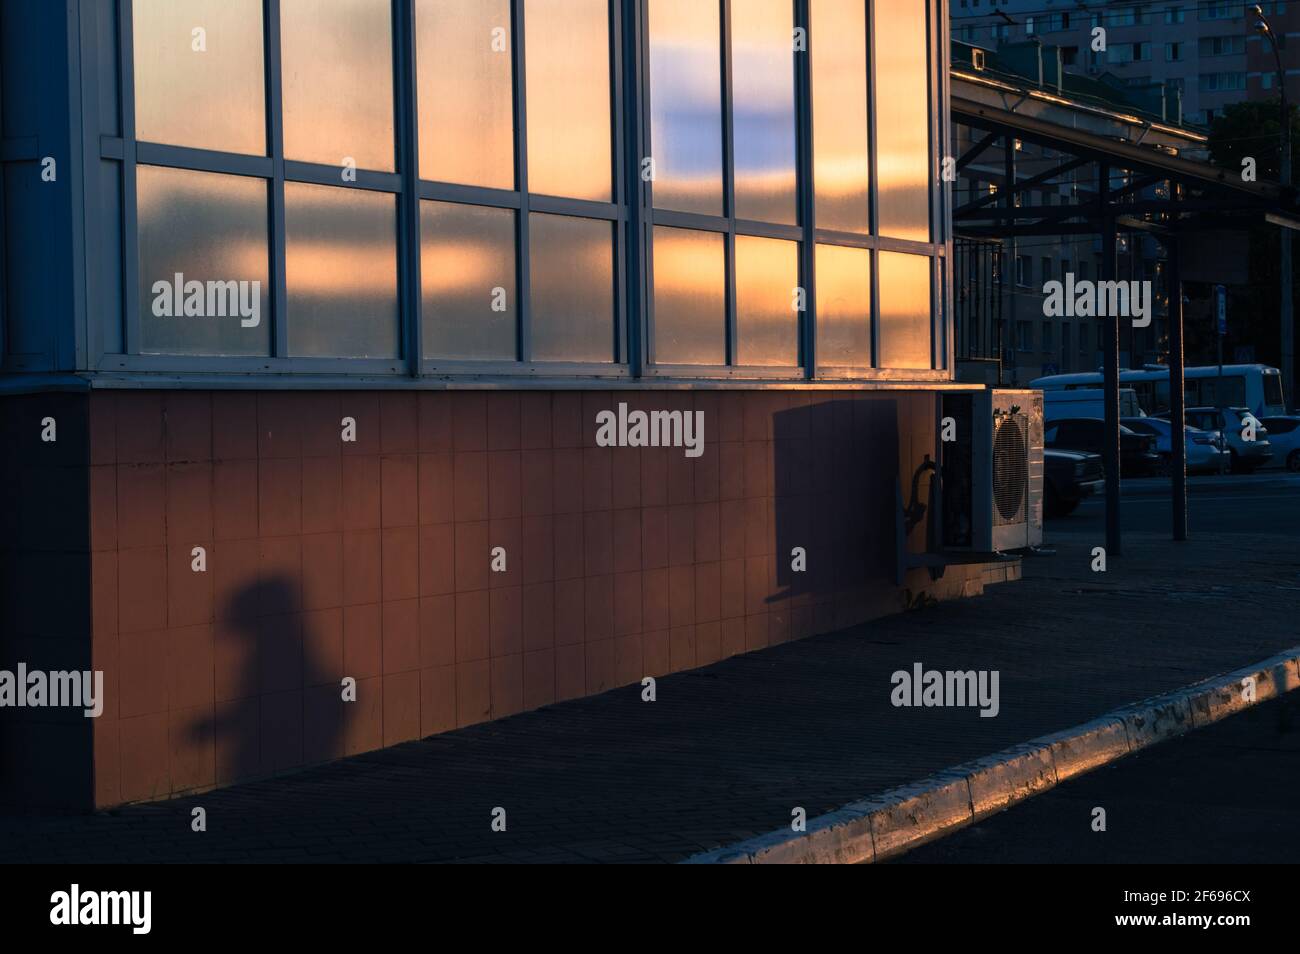 Spiegelung des Sonnenuntergangs in den Stadtfenstern, Menschenschatten, dunkelrot-blaue Töne Stockfoto